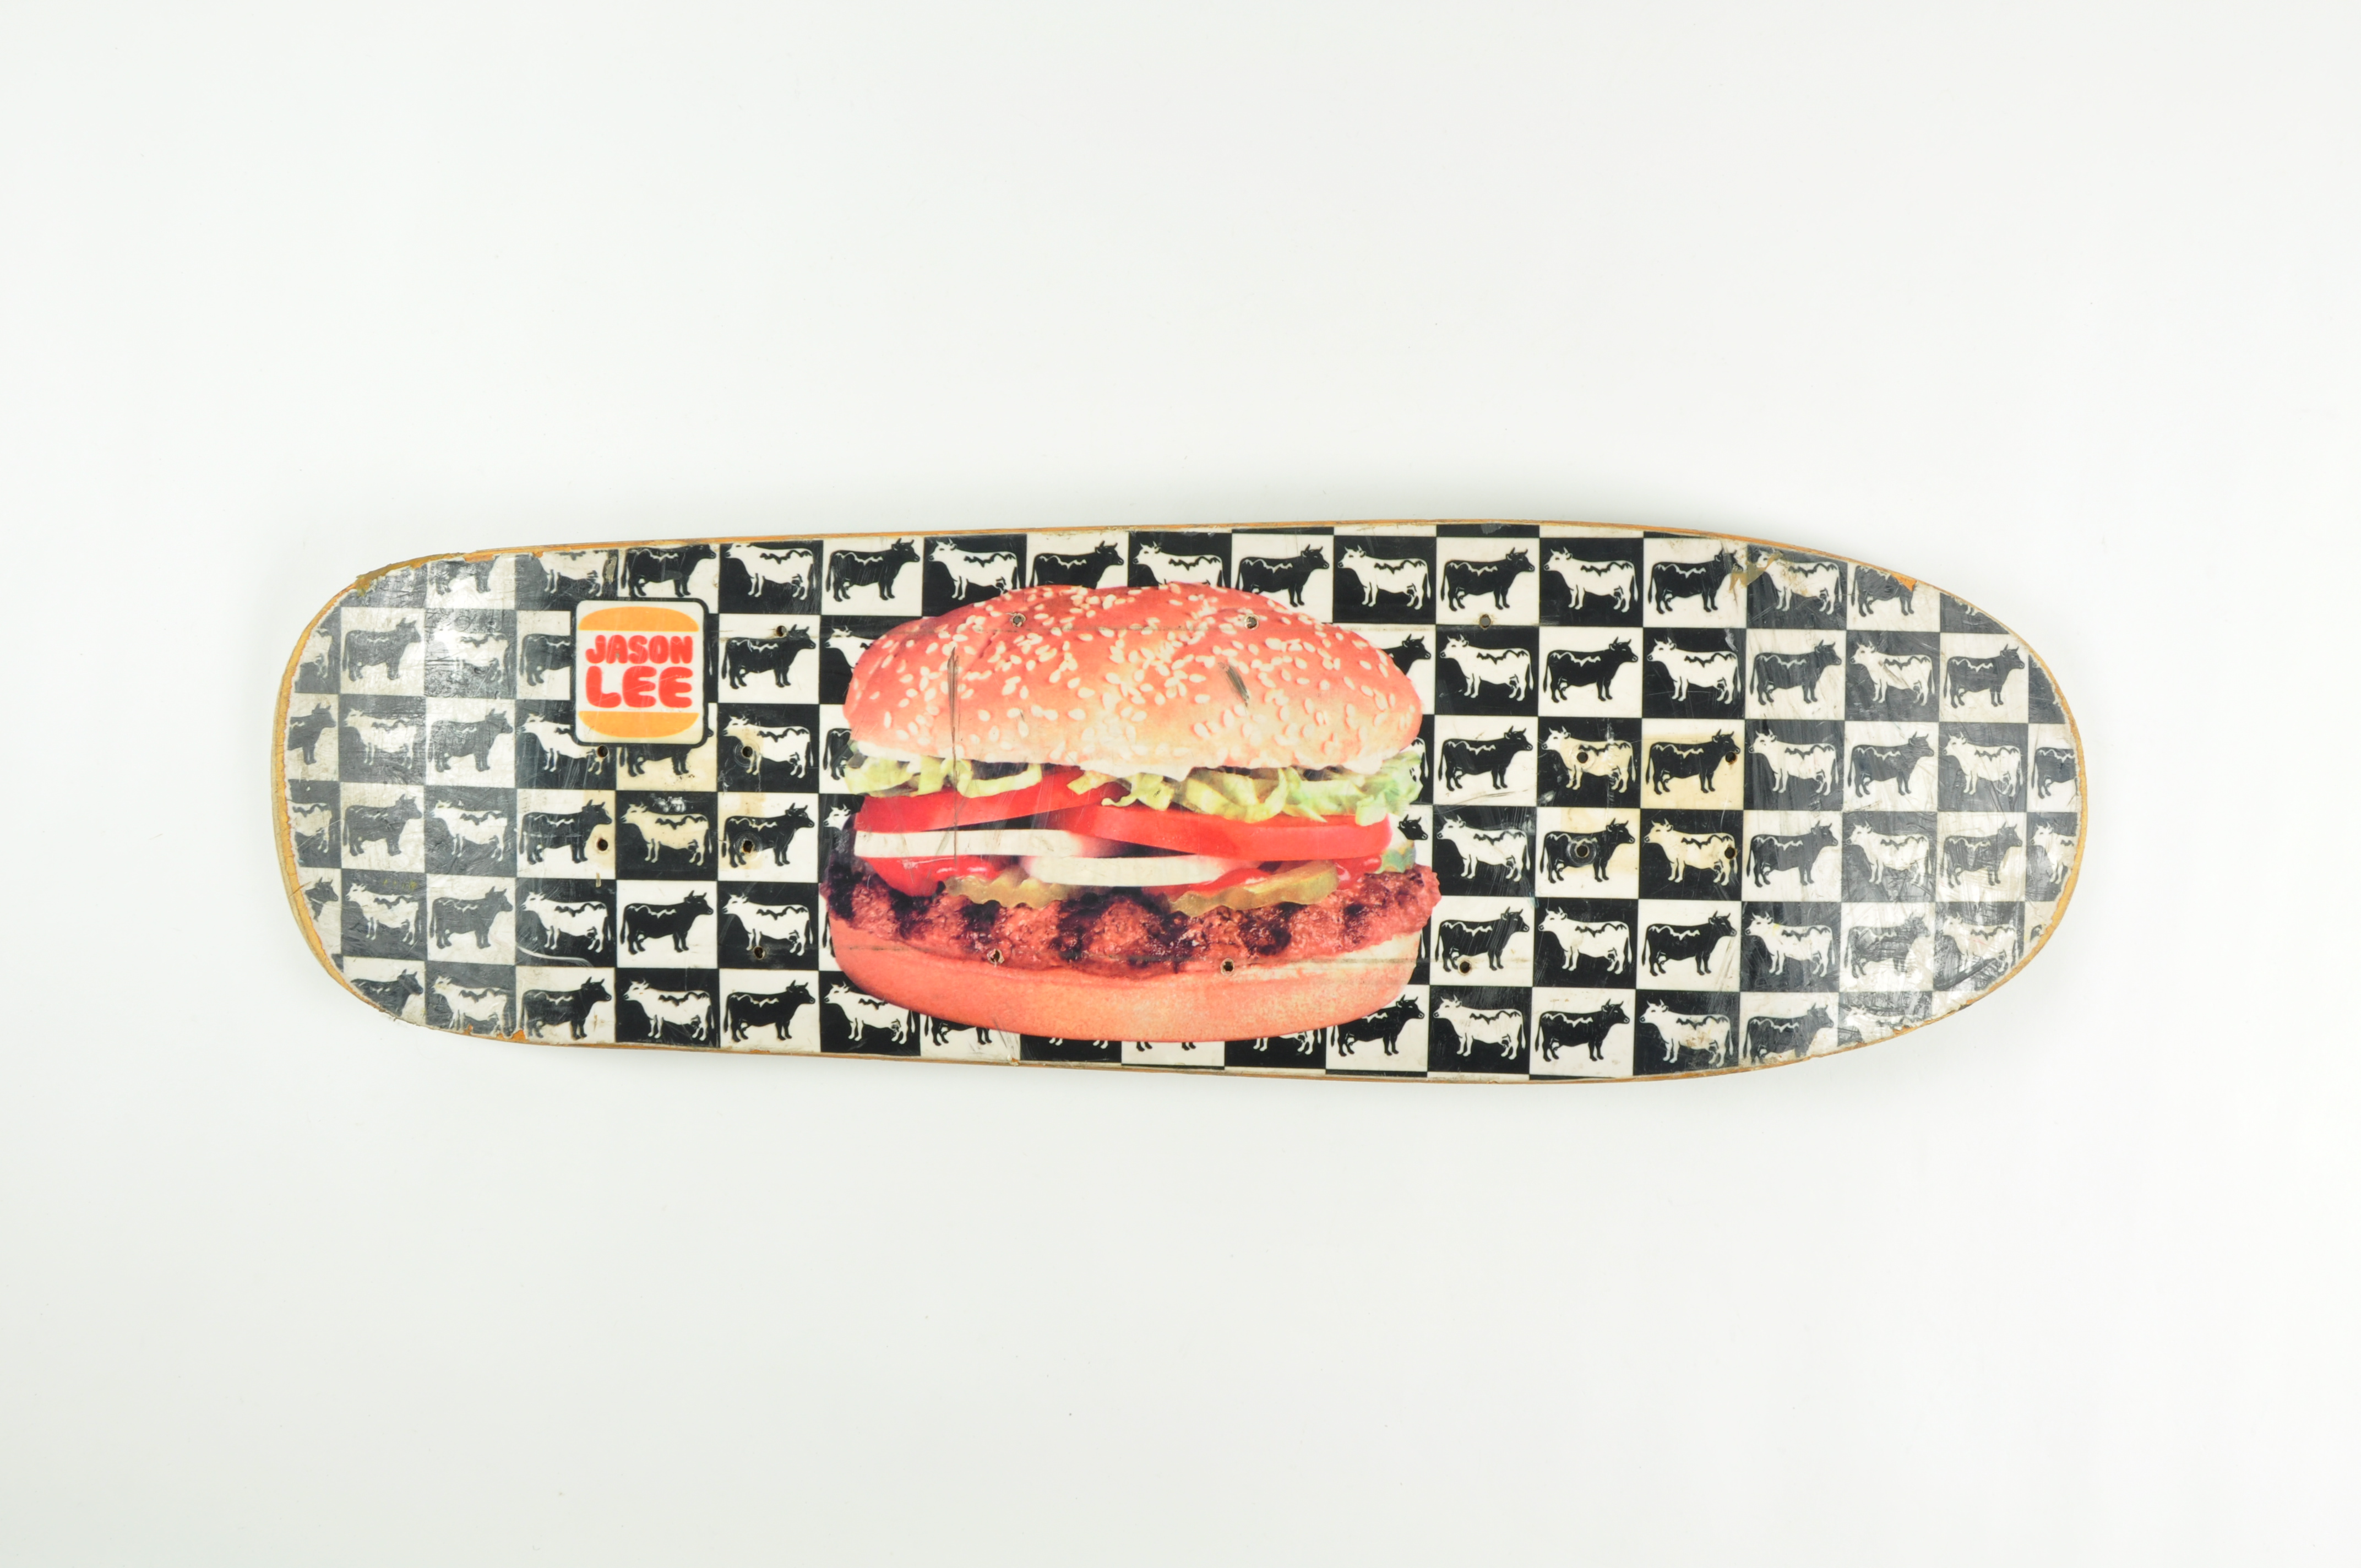 Planche « Burger Board » conçue pour le skateur Jason Lee, Blind, 1991, 2002.45.11, don Jean-Marc Vaissette. Photo Mucem